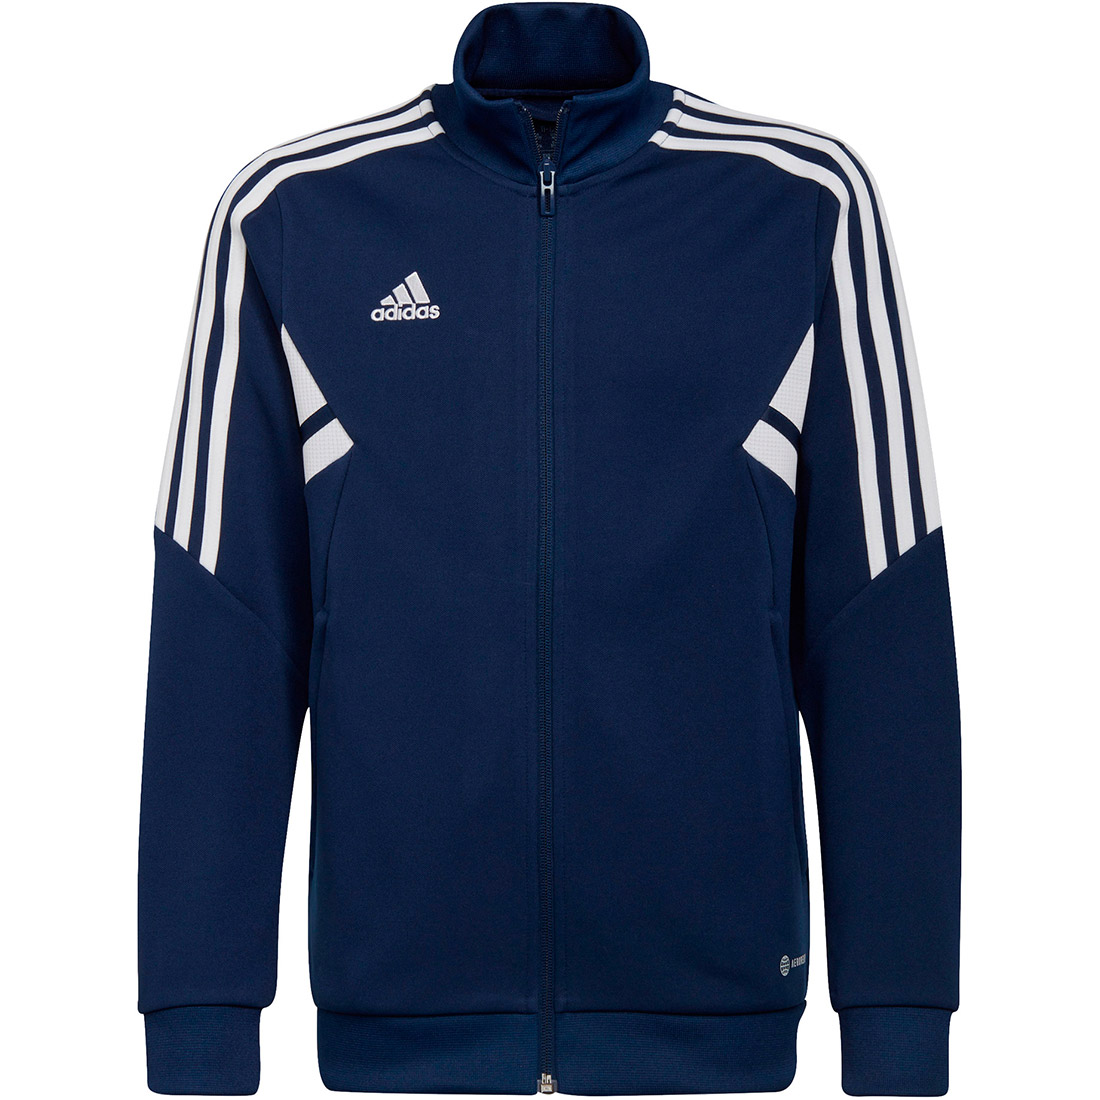 Adidas Kinder Trainingsjacke Condivo 22 blau-weiß